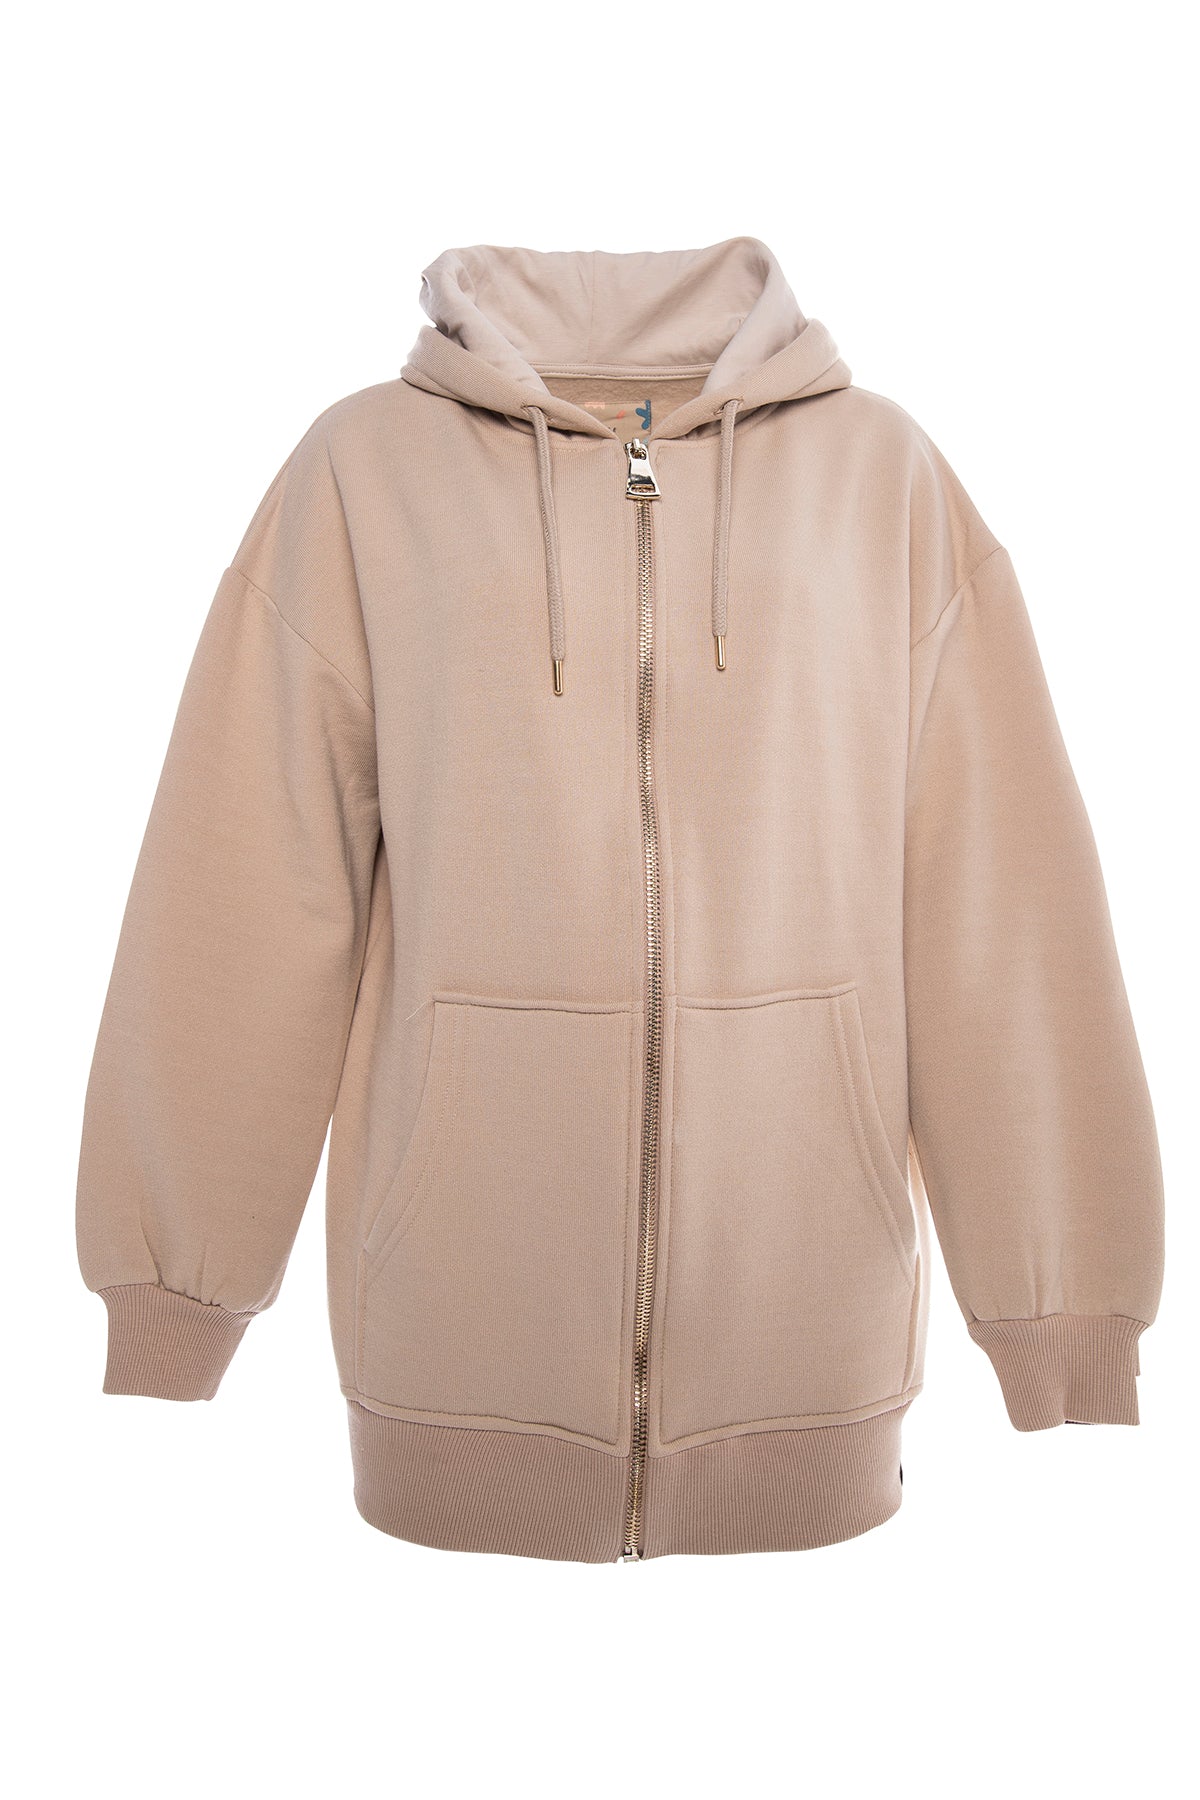 Oversize front zip hoodie in light brown.